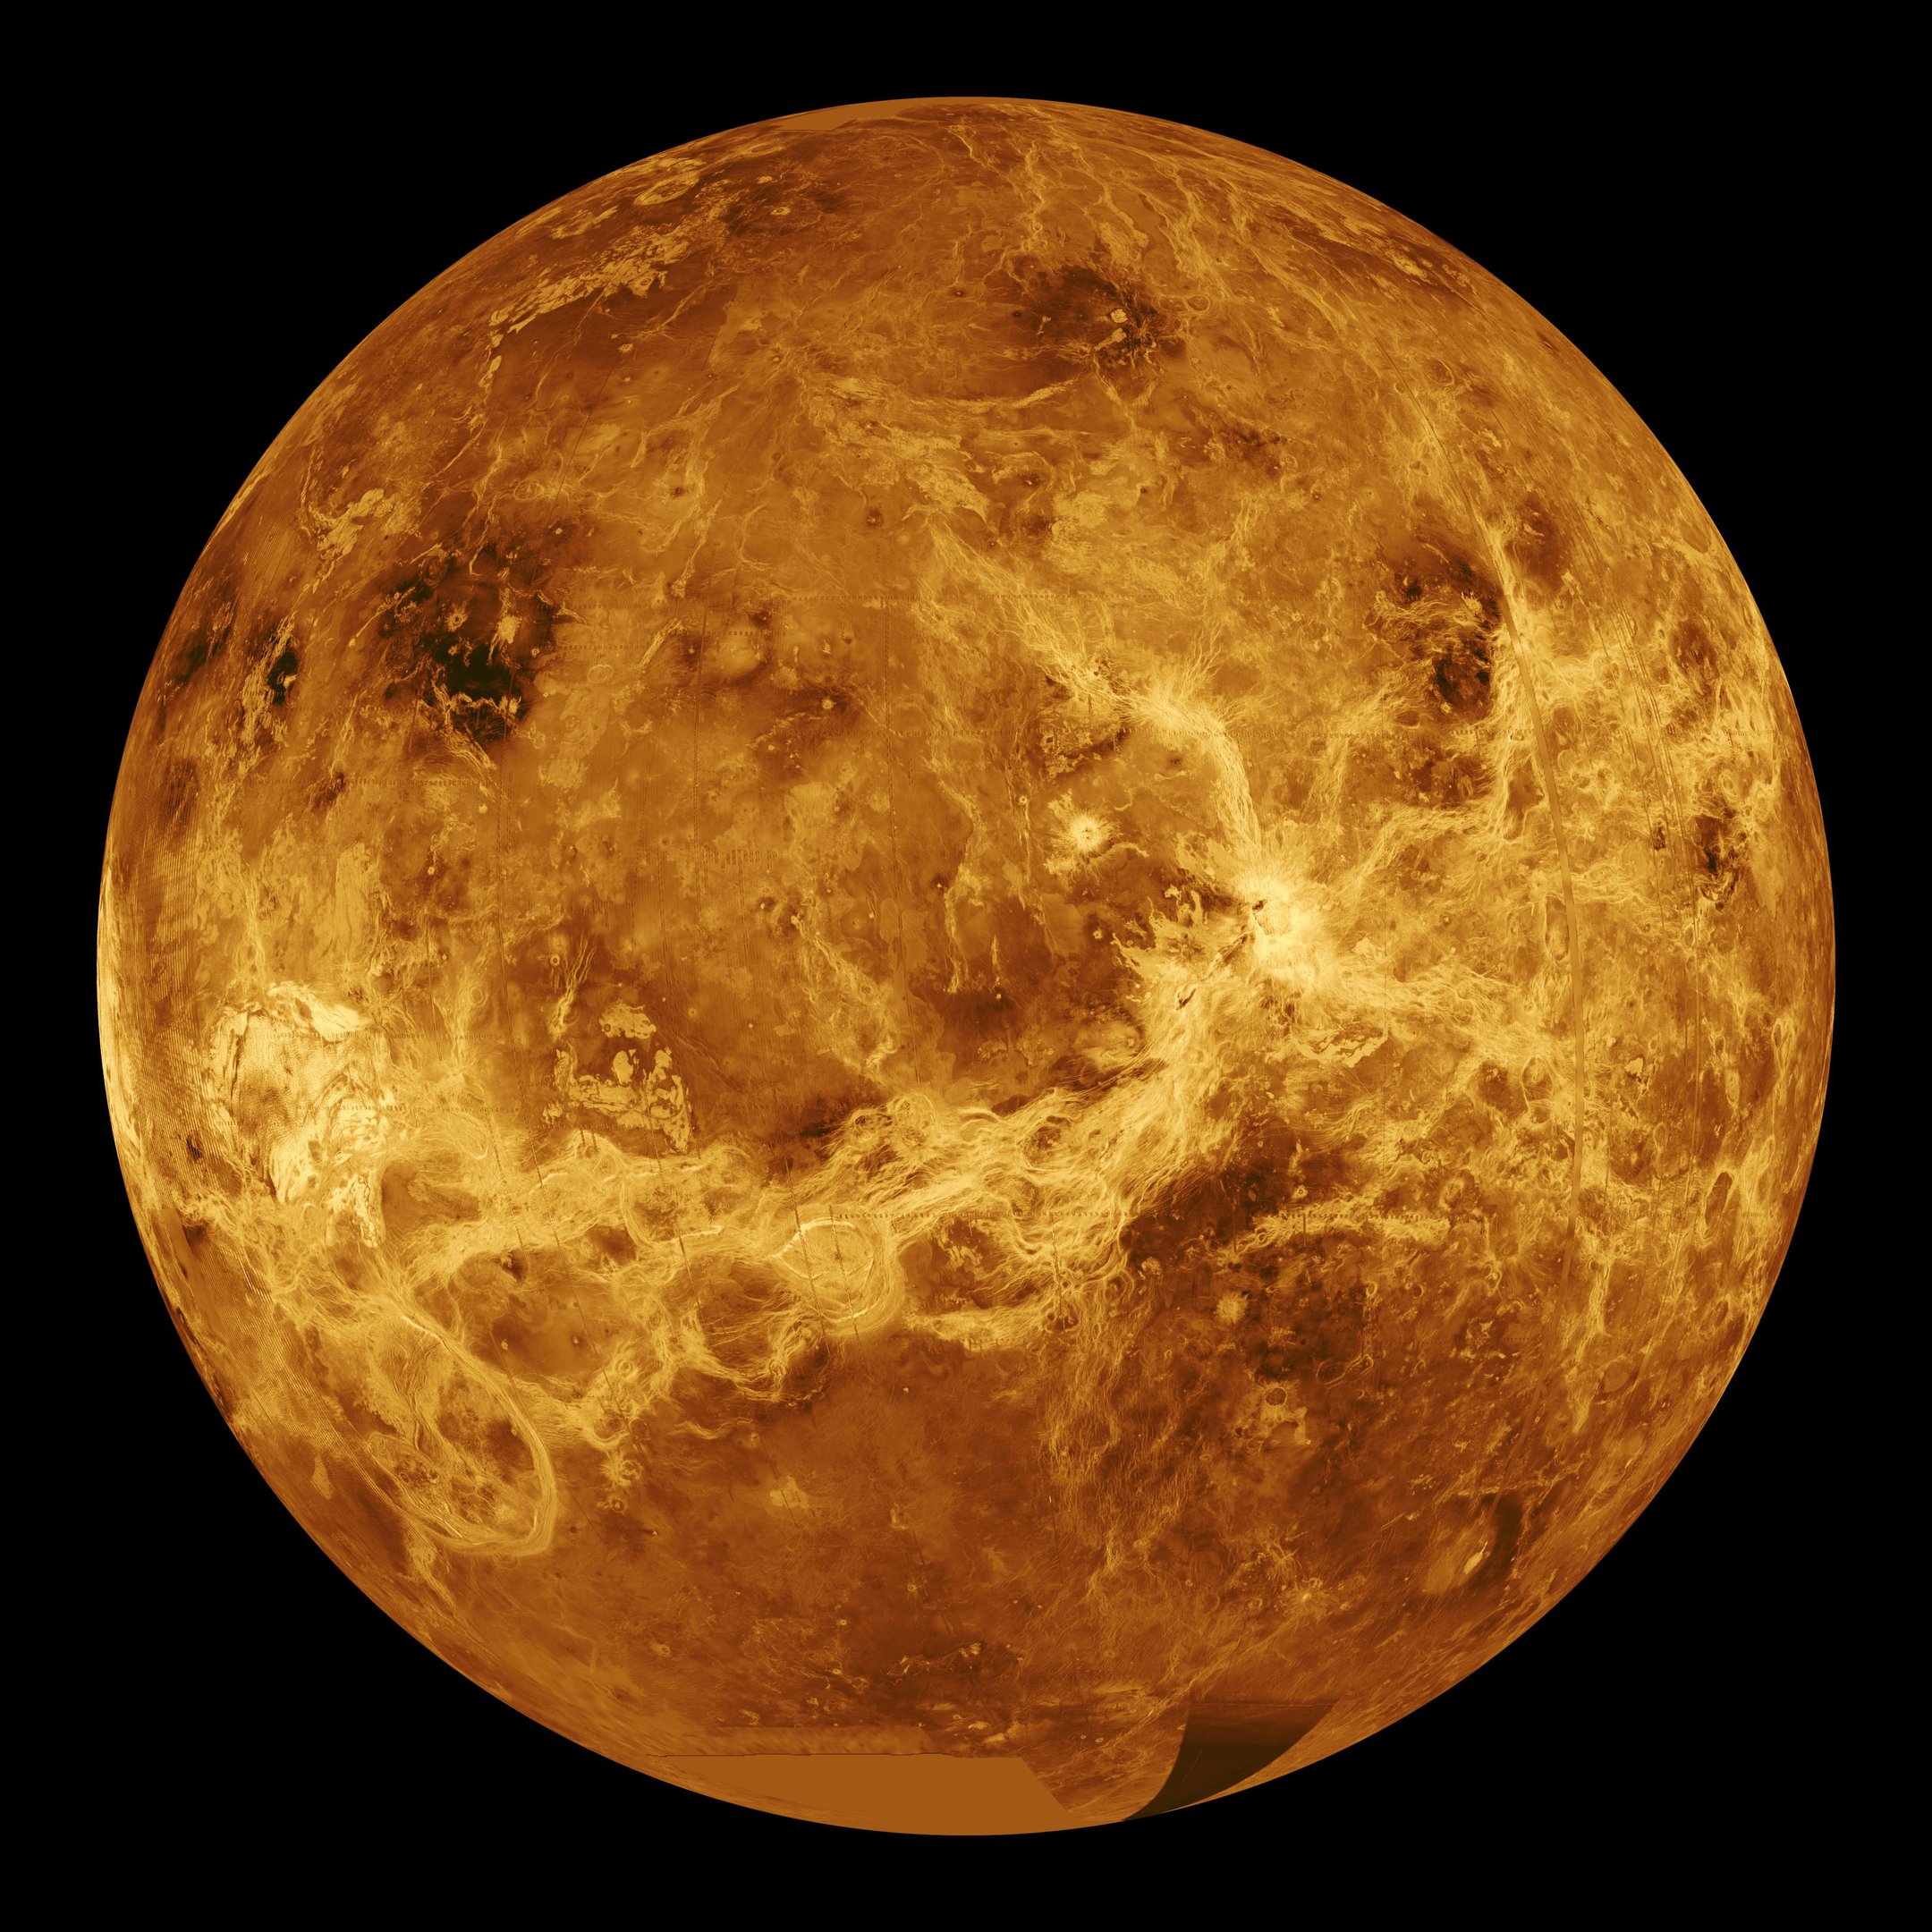 'Enxame' de robôs poderá estudar a atmosfera de Vênus